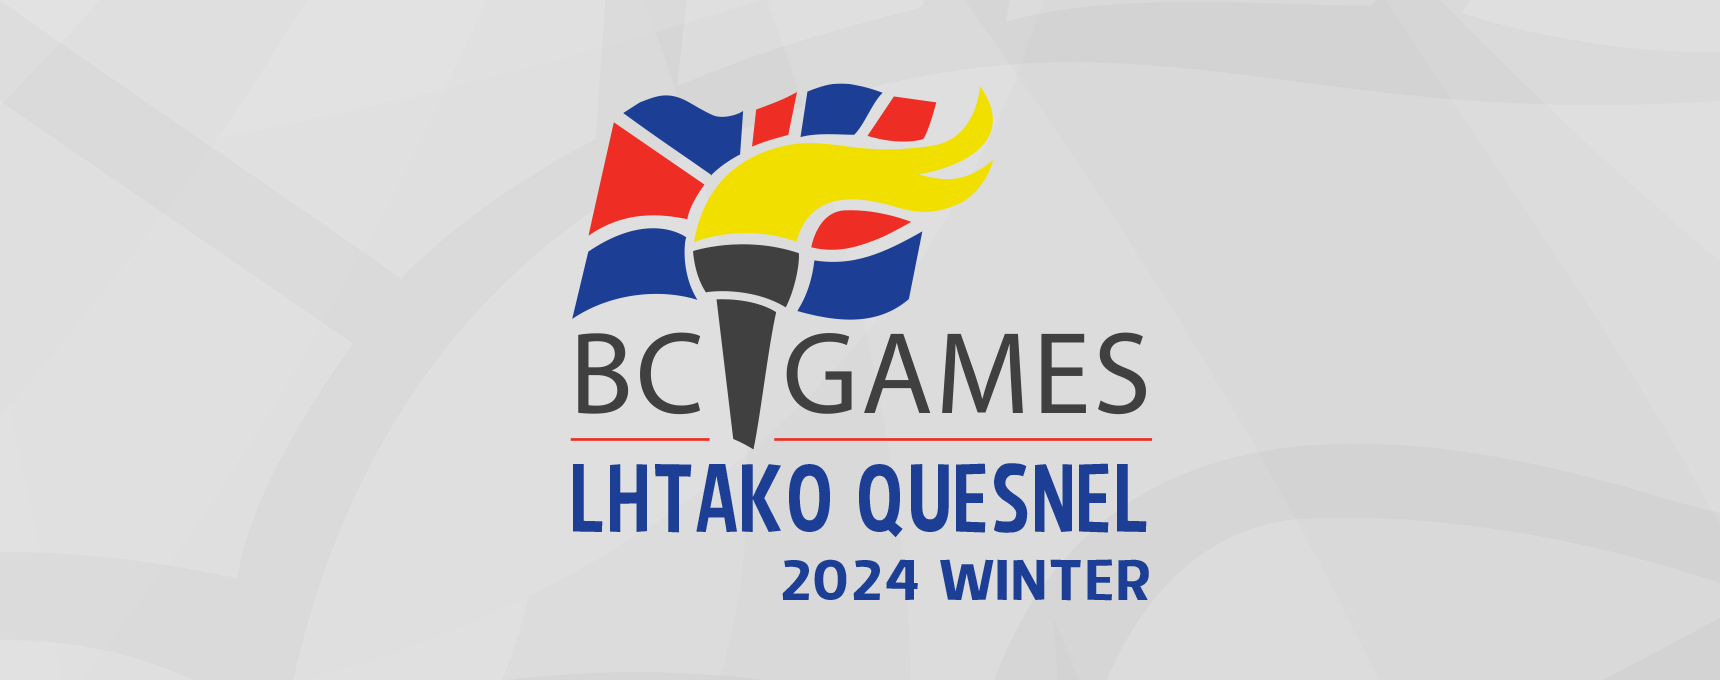 Lhtako Quesnel 2024 BC Winter Games